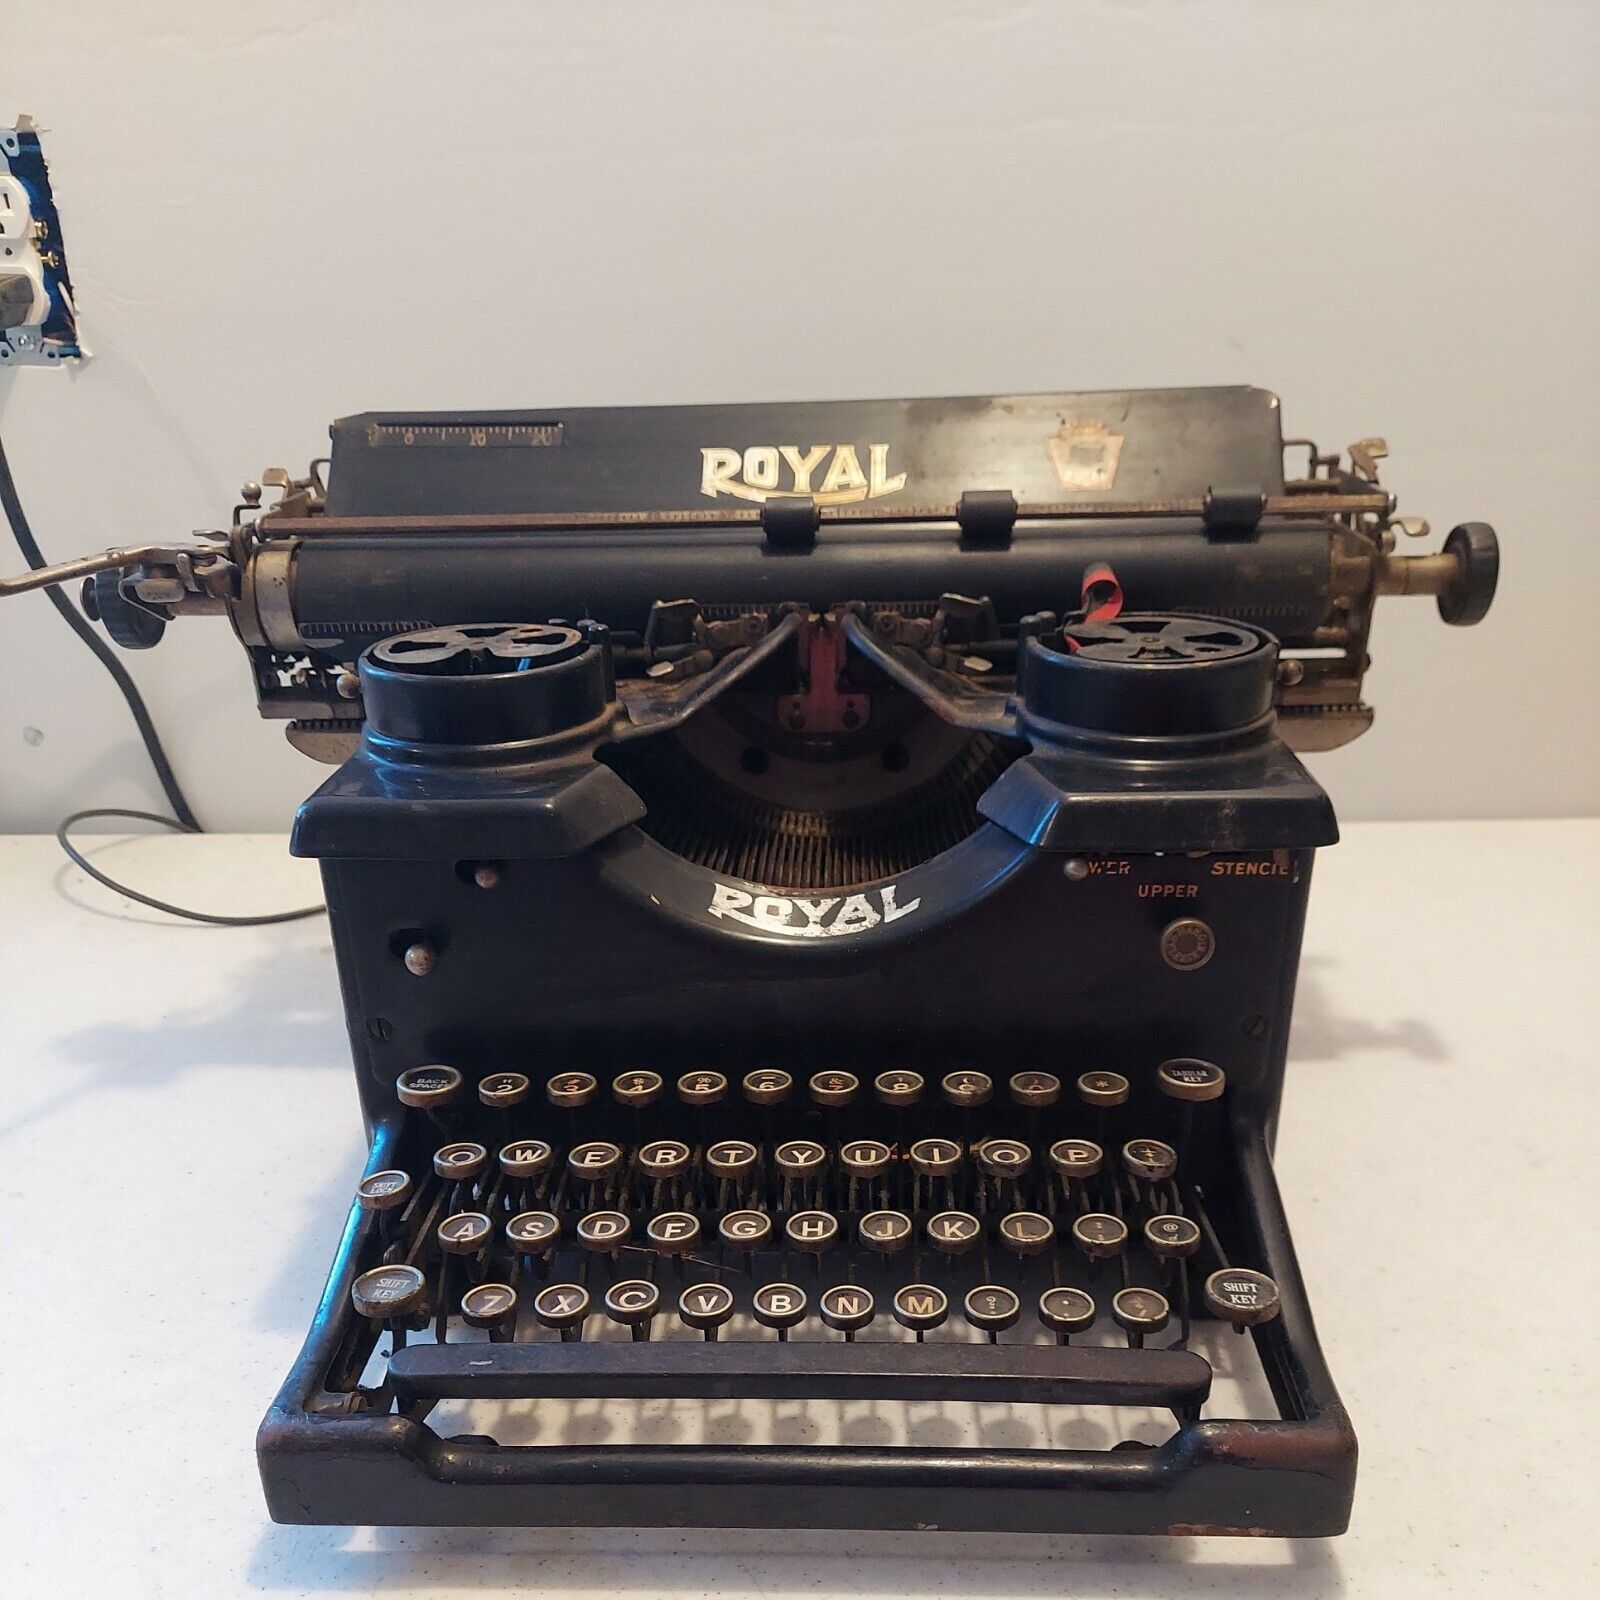 Vintage Royal Typewriter 14-934669 